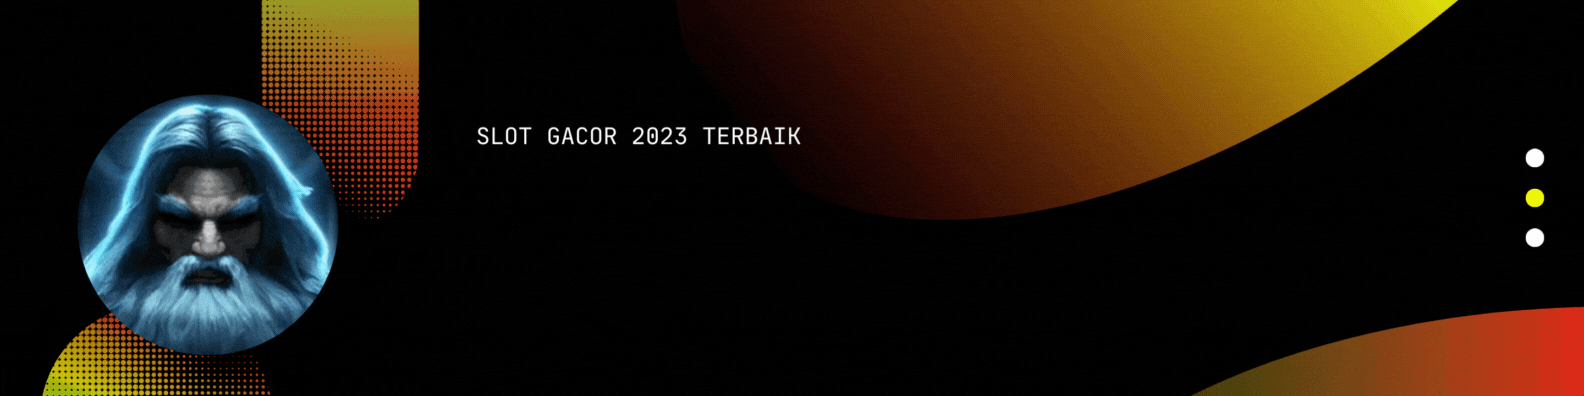 AGEN SLOT GACOR 2023 TERBARU